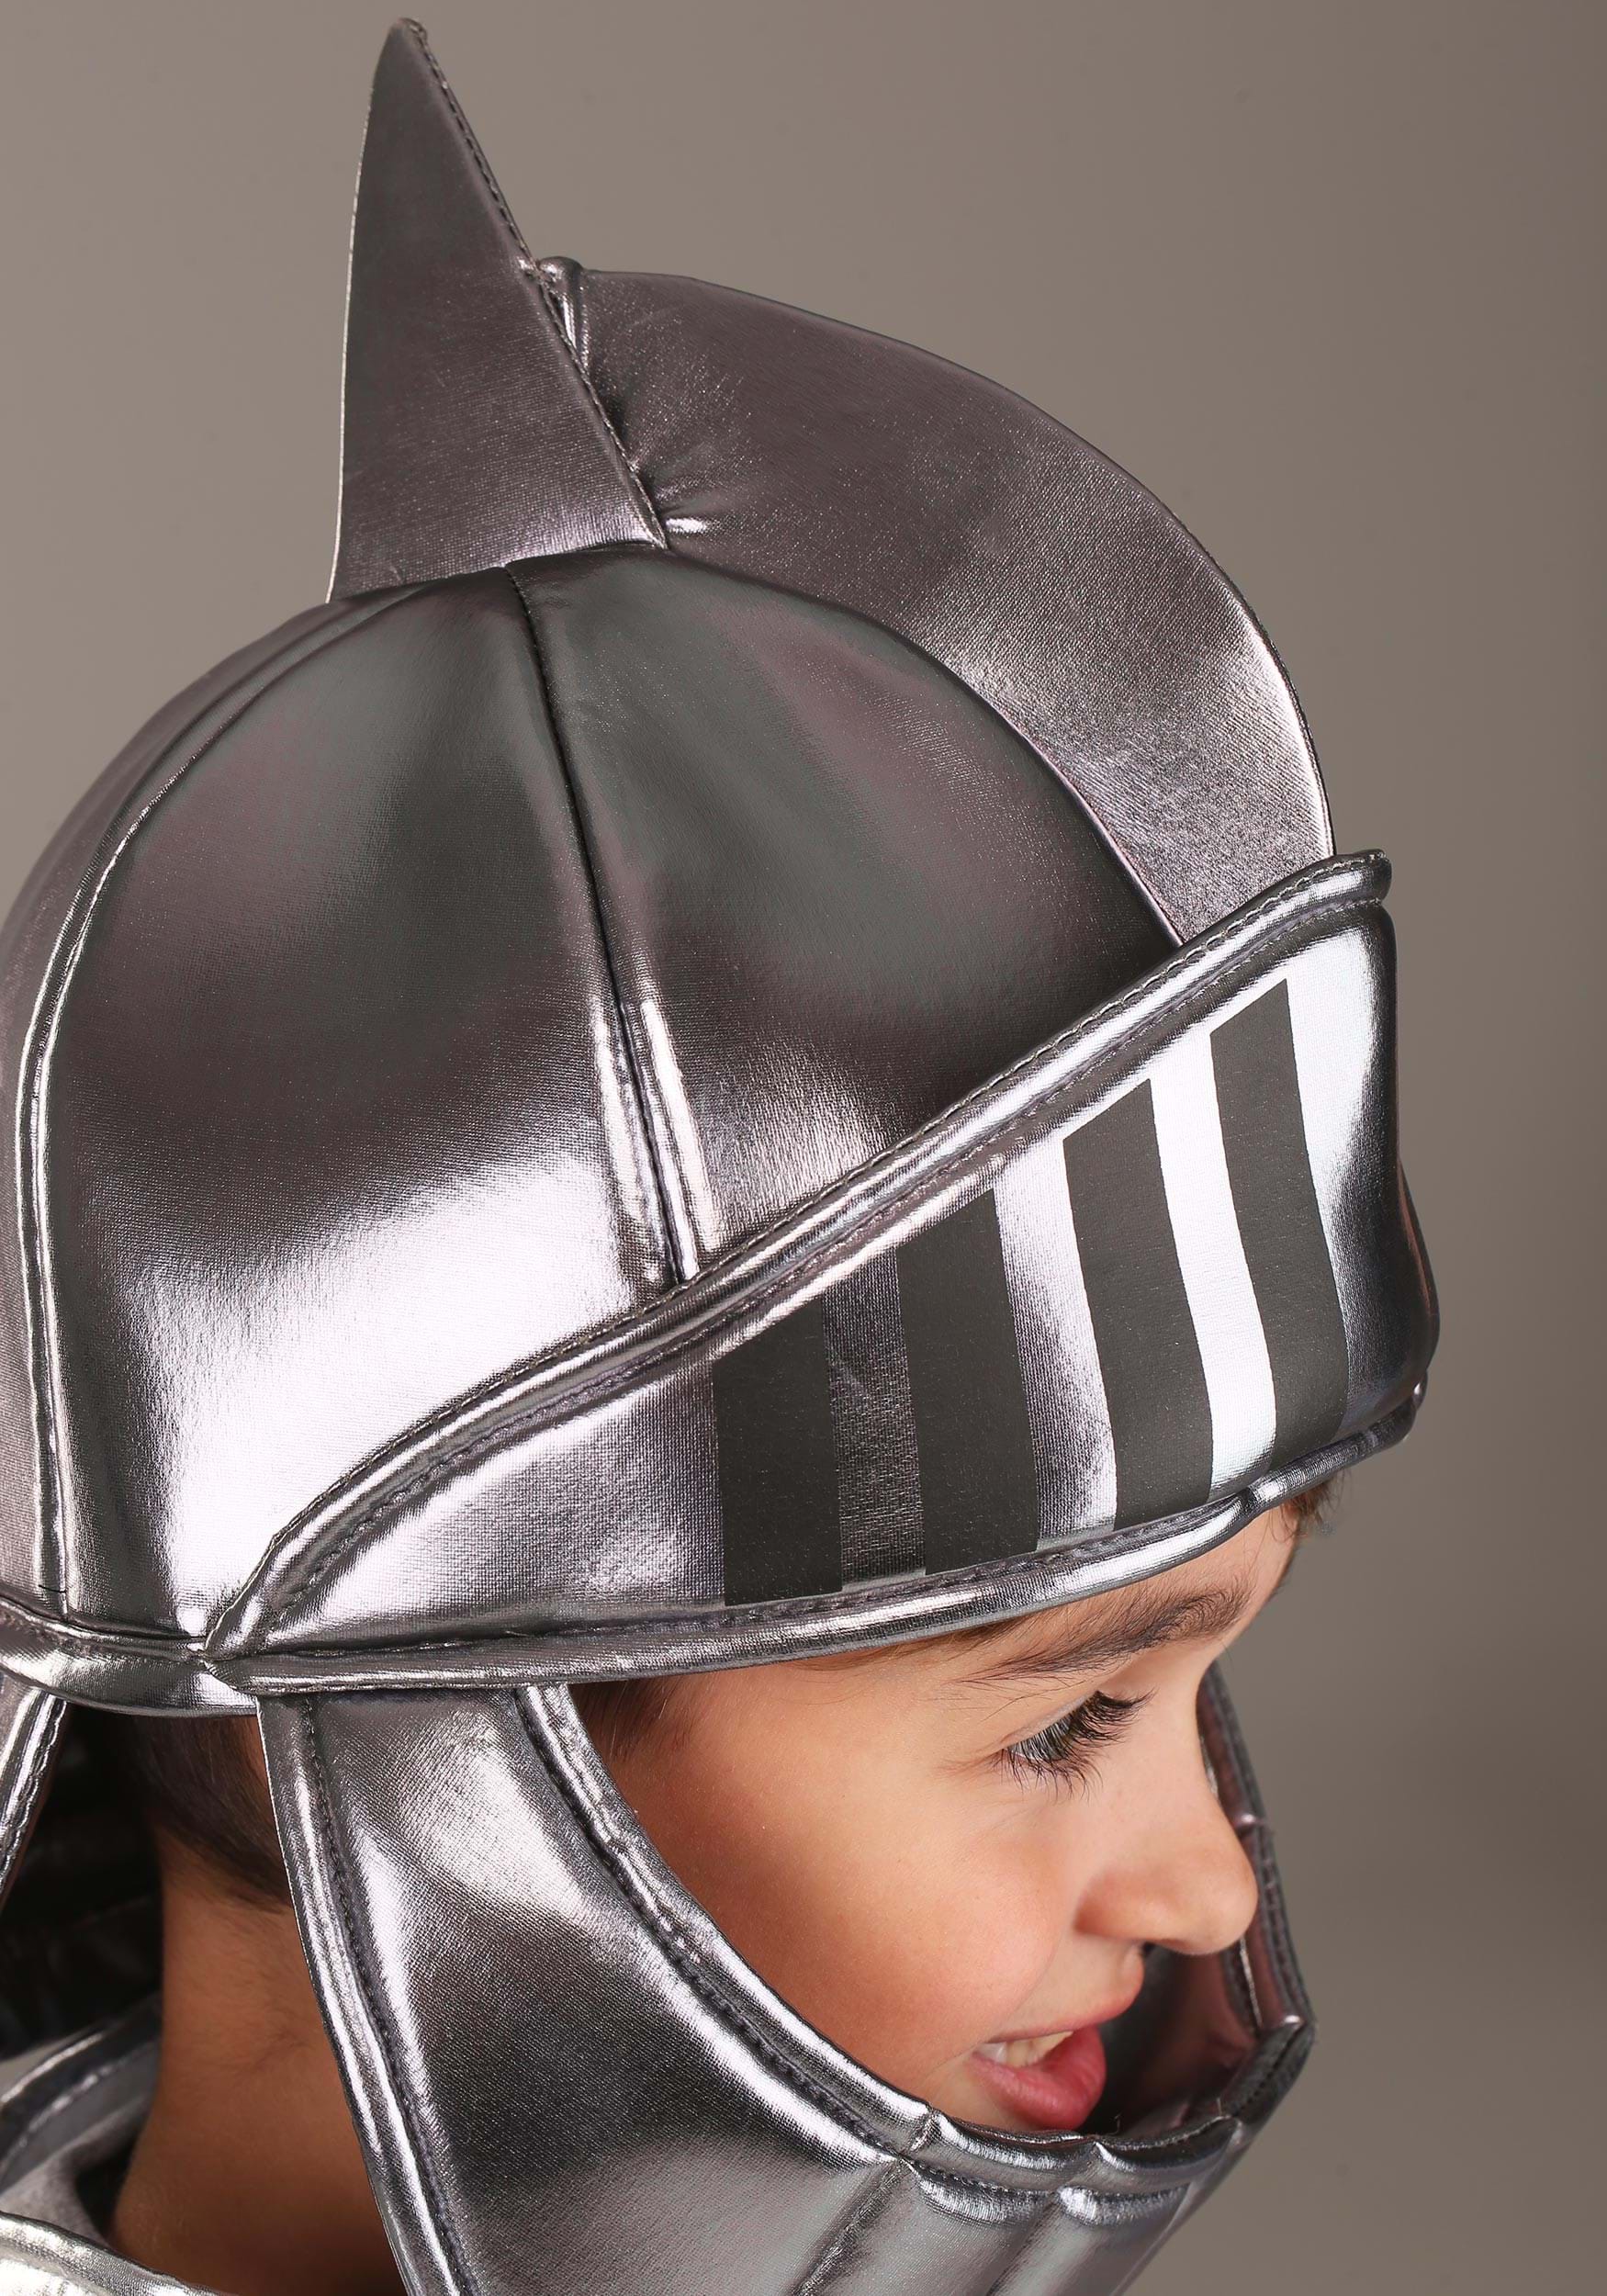 Silver Knight Fancy Dress Costume Helmet Soft